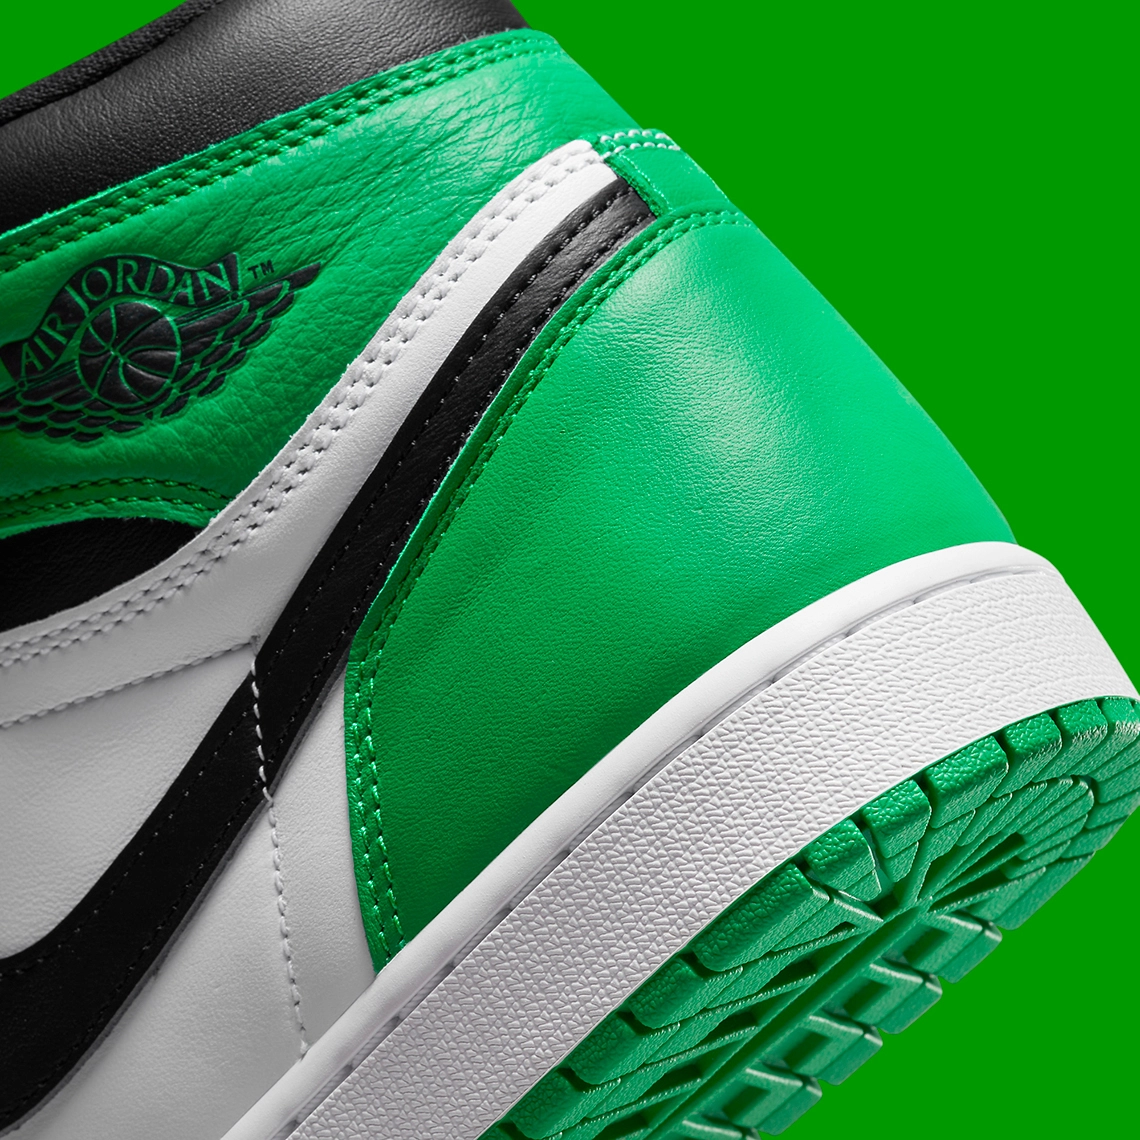 Where To Buy The Air Jordan 1 Retro High OG “Lucky Green”